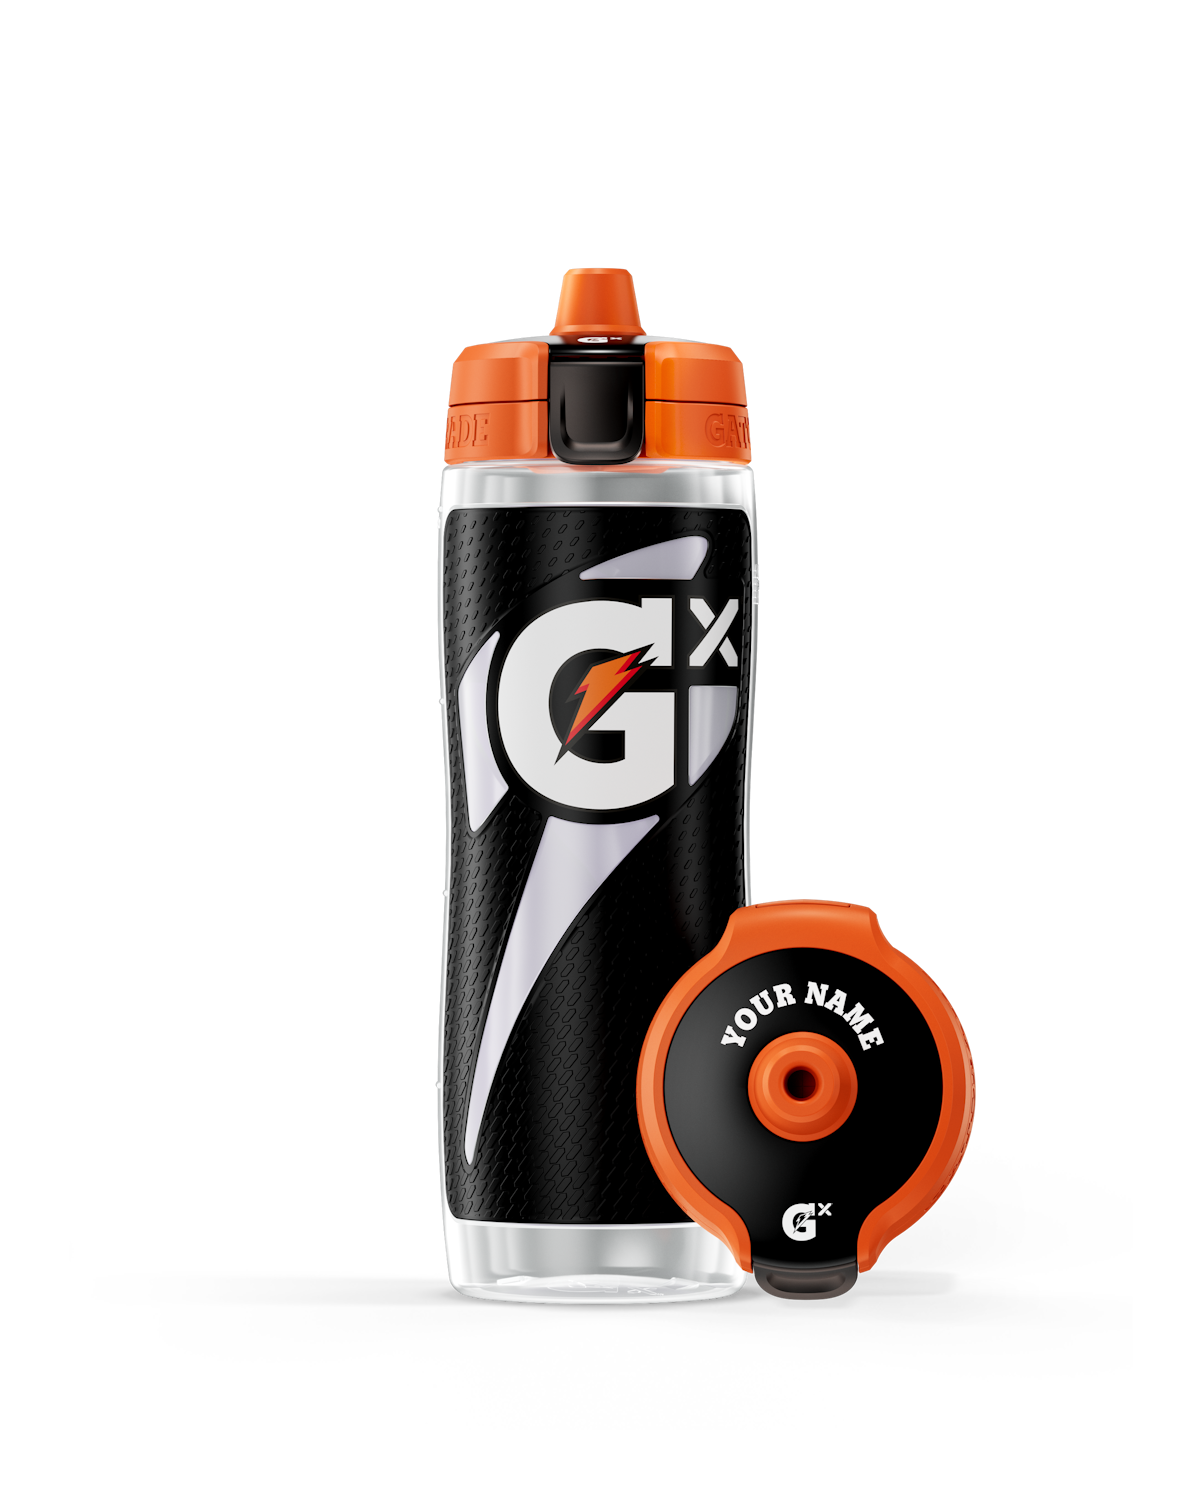 Black Gx Squeeze Bottle (30 oz)